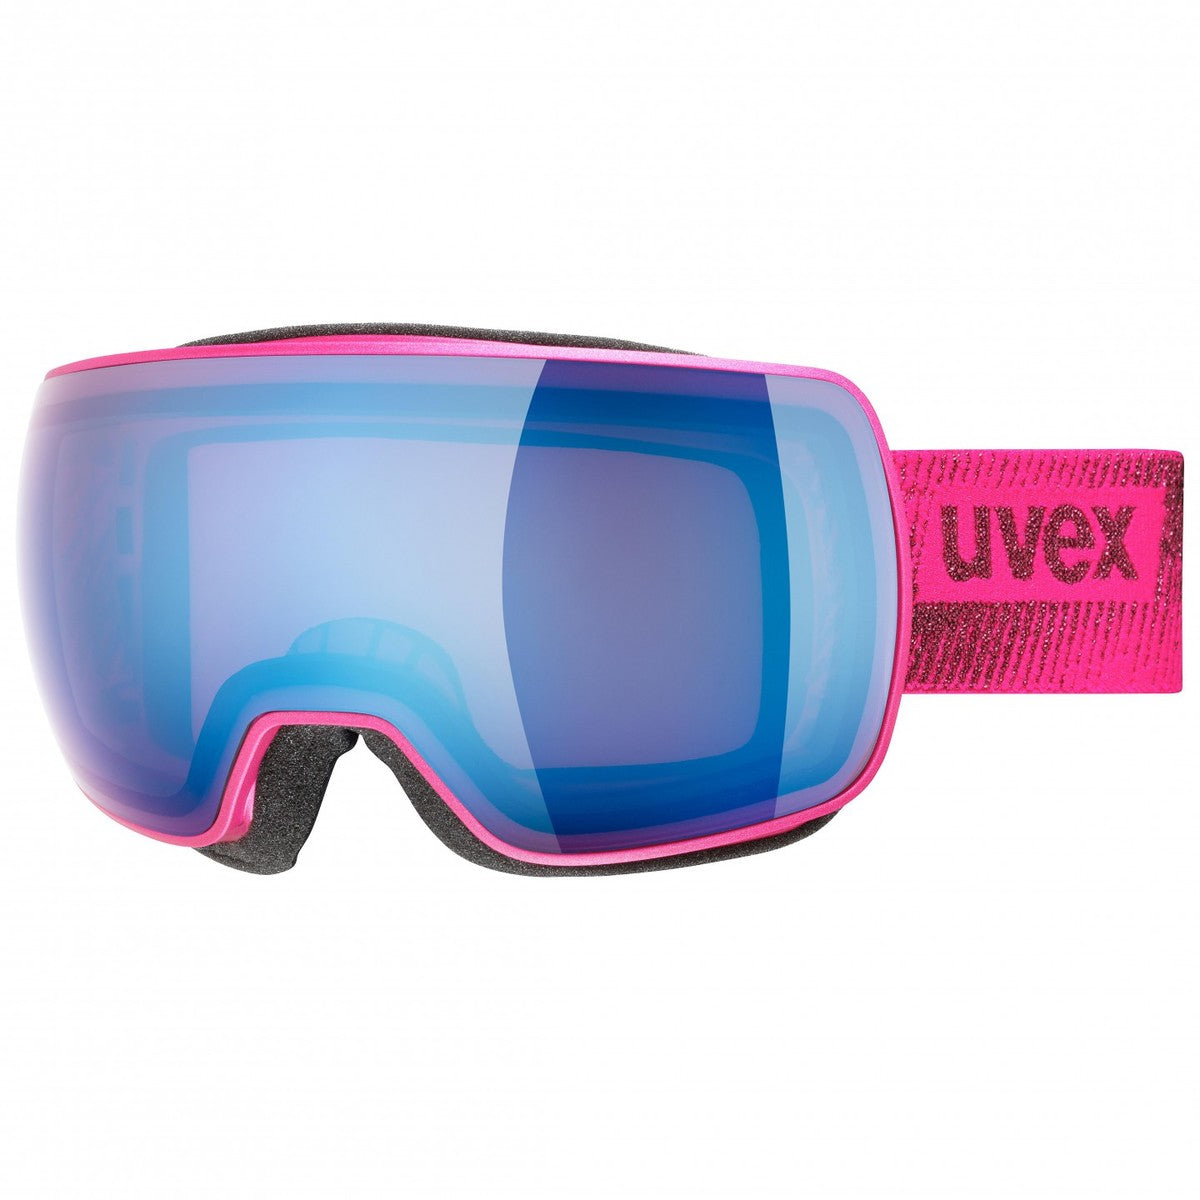 Uvex Compact FM skibril roze